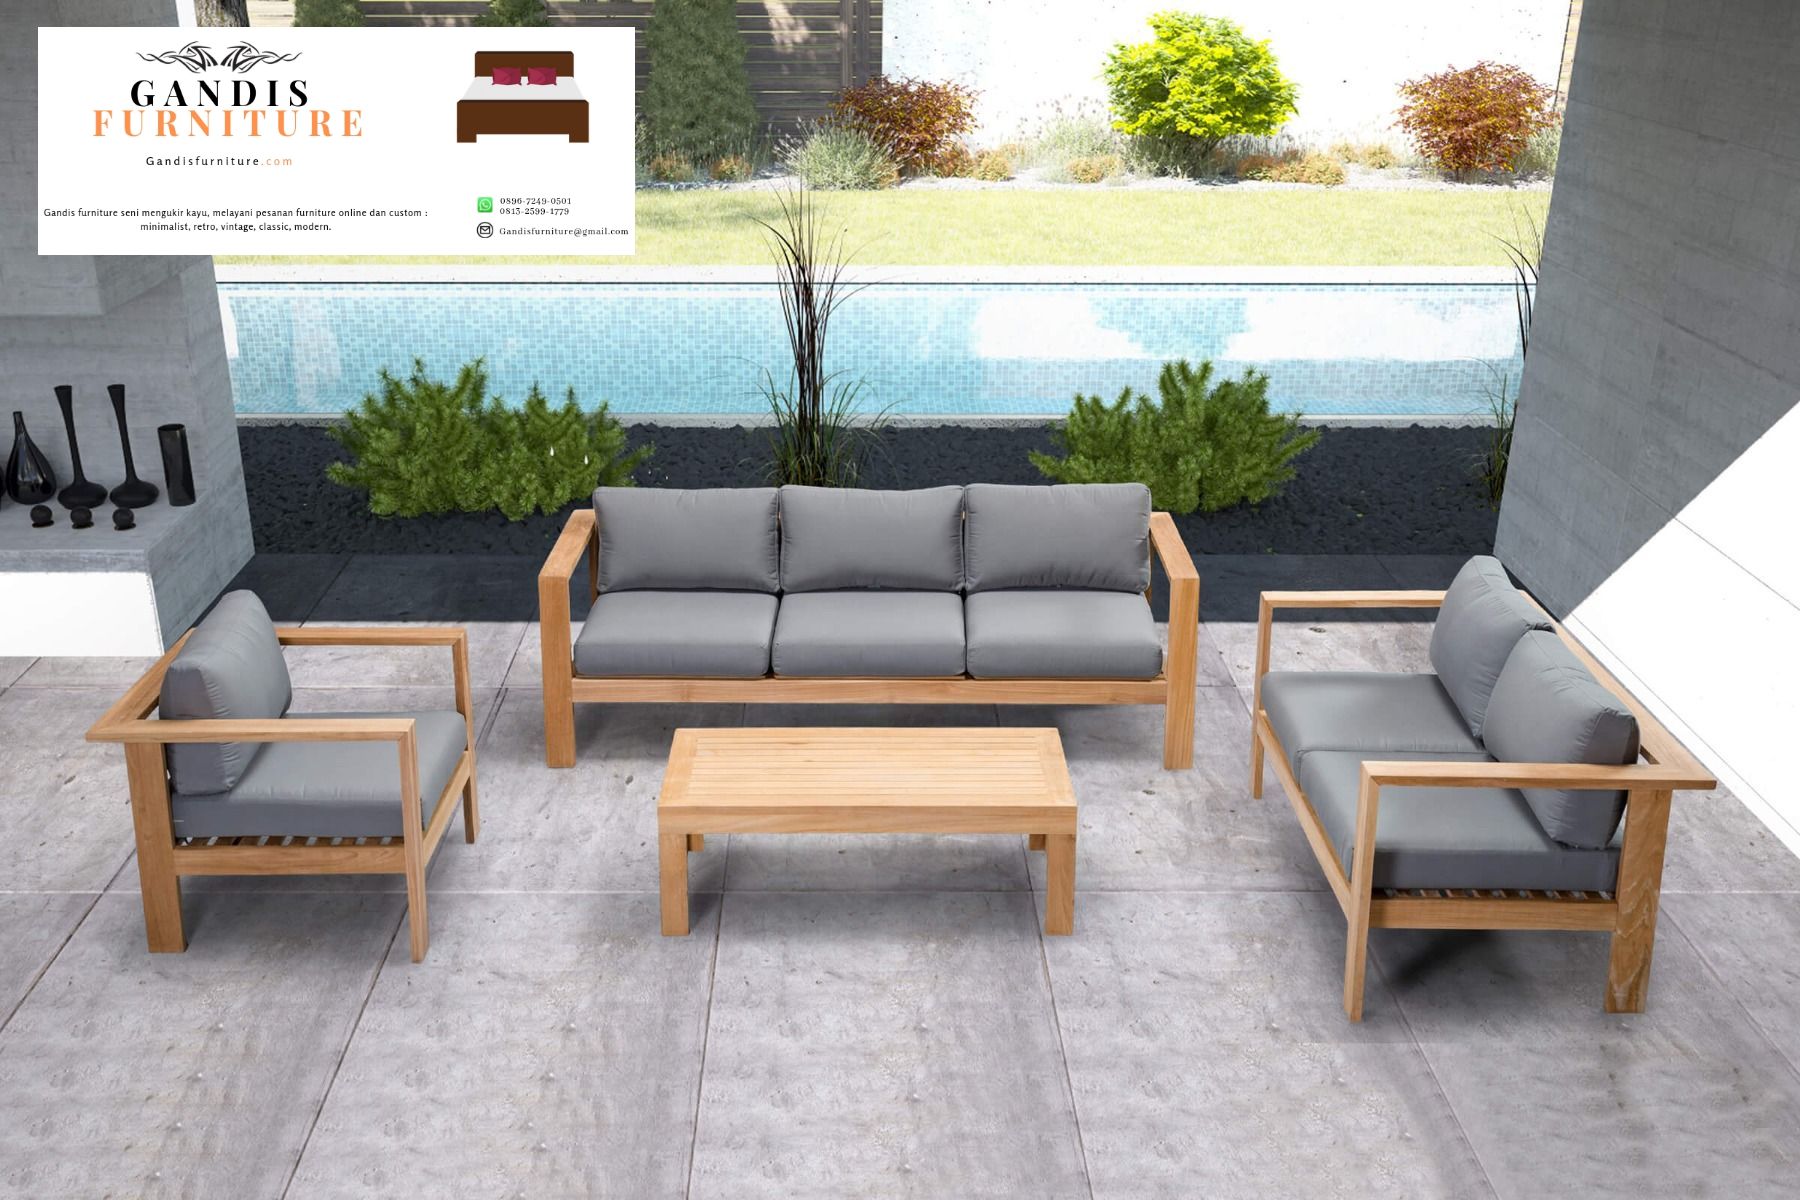 Set Kursi outdoor kayu jati minimalis terbaru 2020 Dan Berkualitas